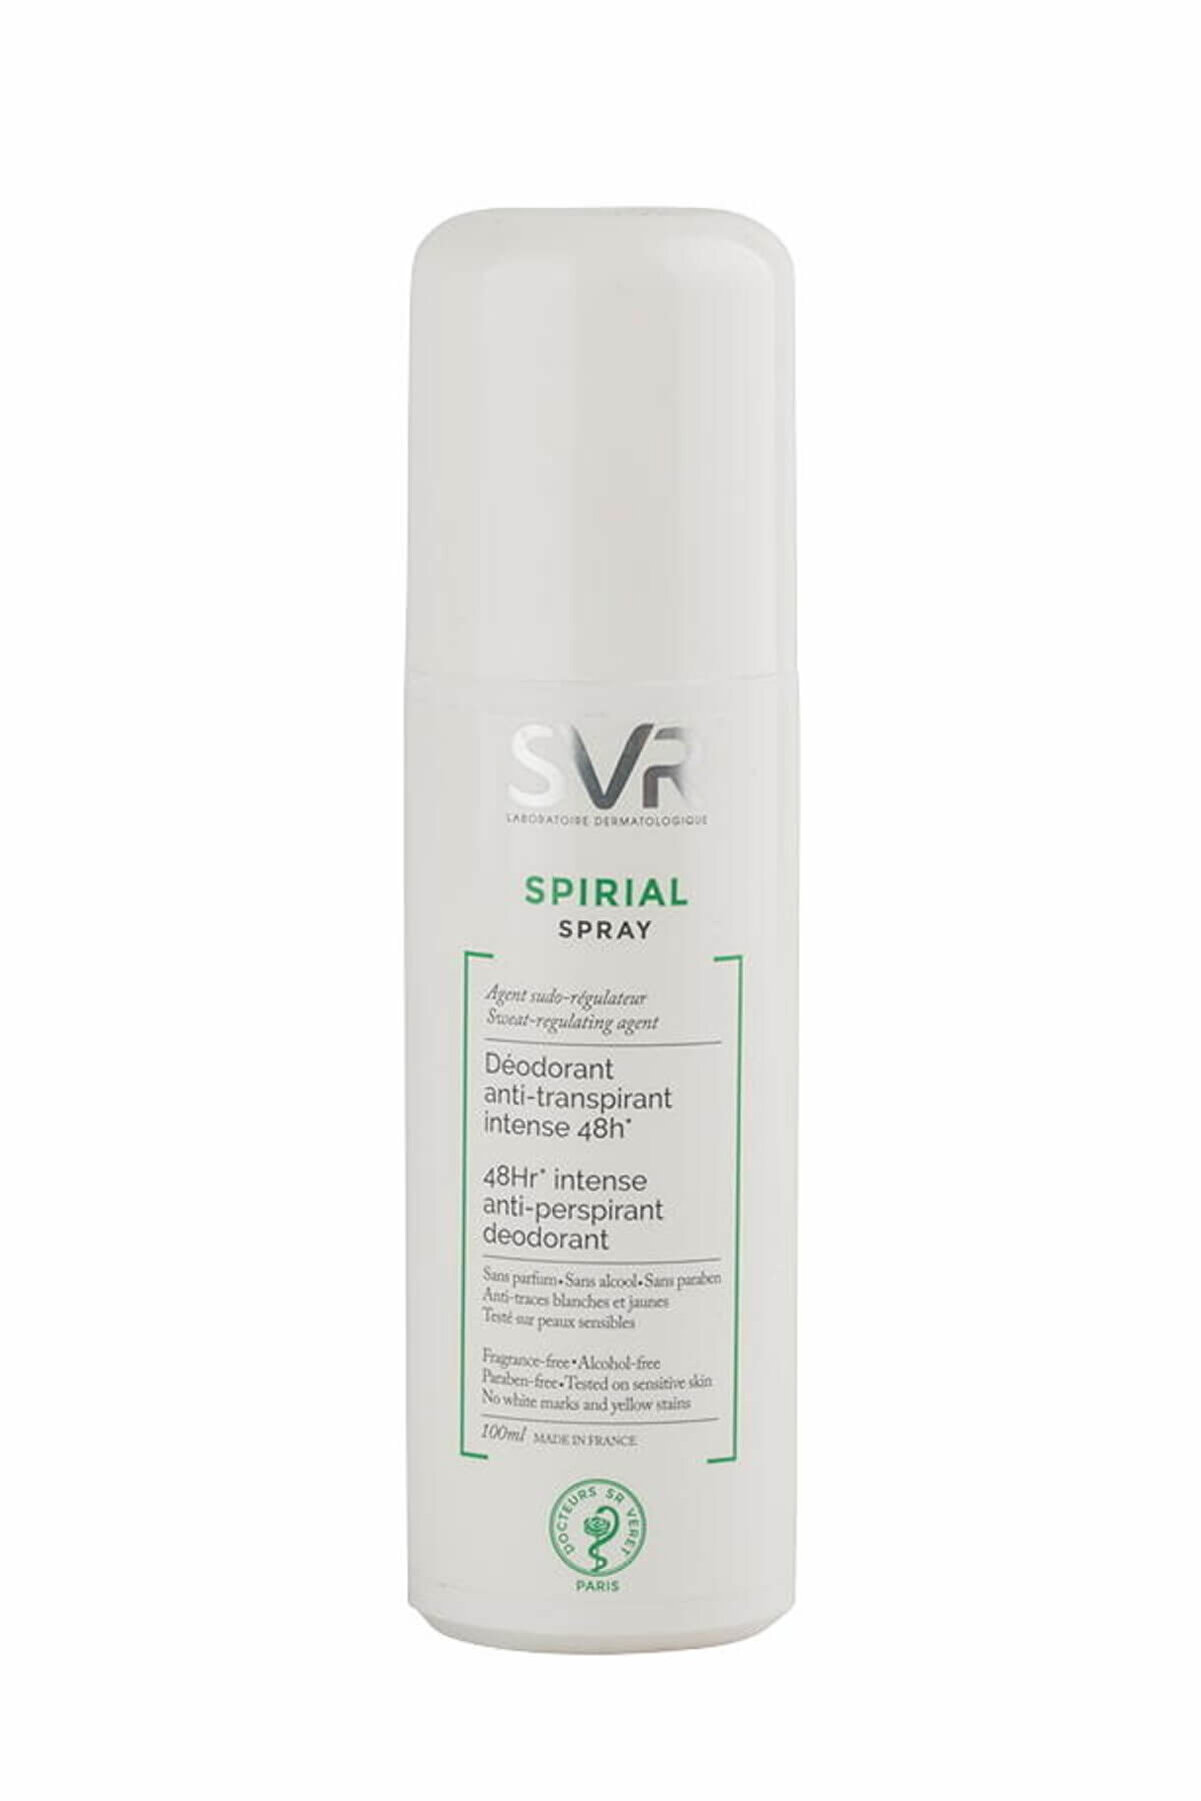 SVR Terleme Önleyici Deodorant Sprey - Spirial Anti Transpirant Deodorant Spray 100 ml